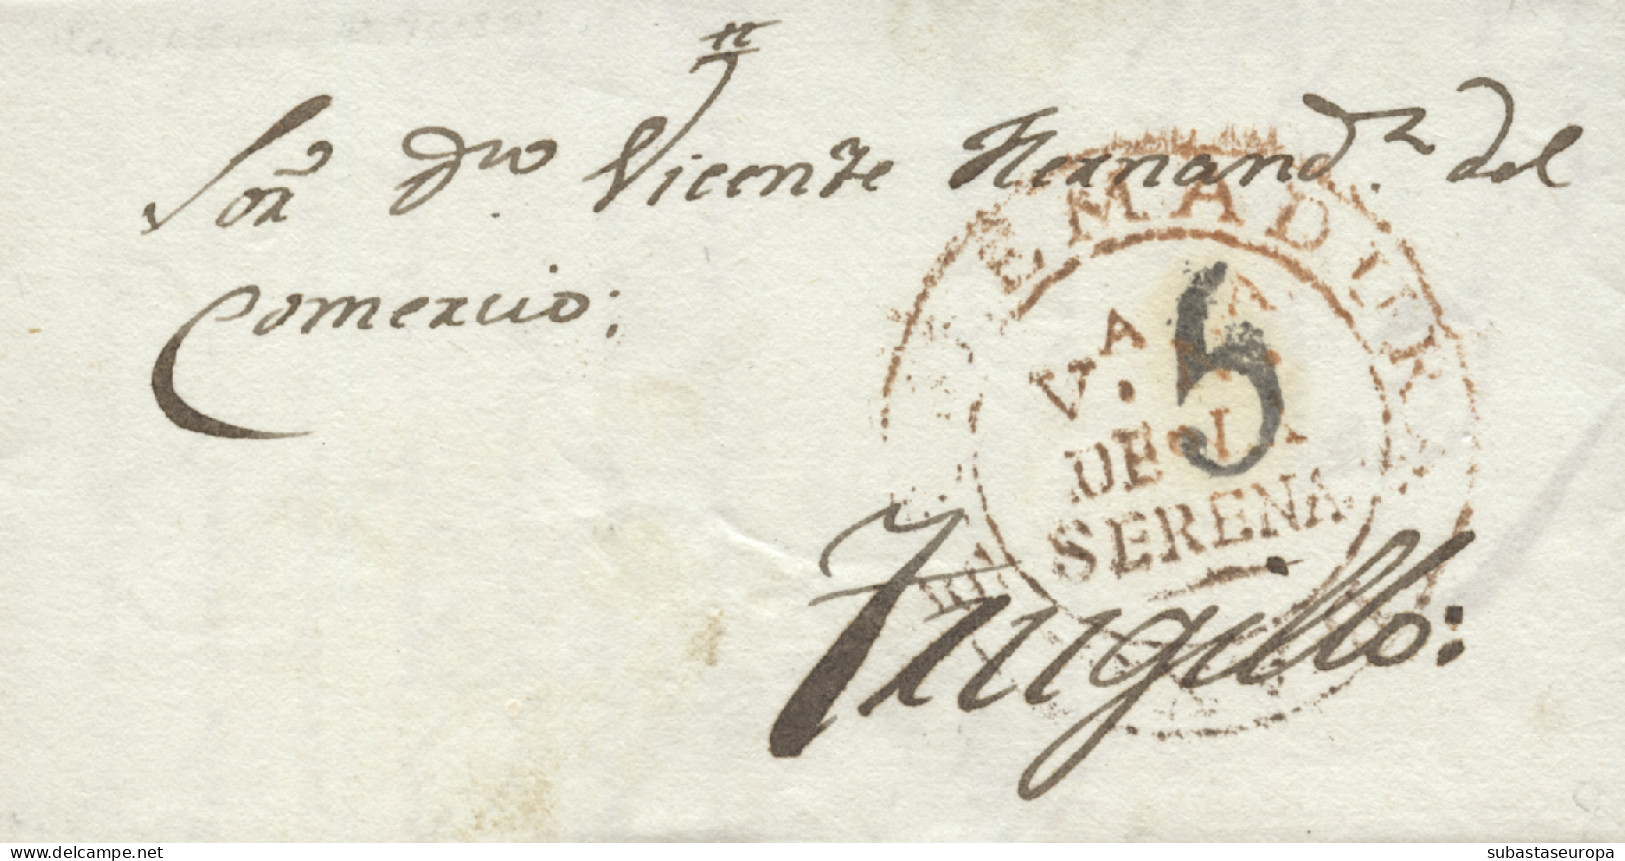 D.P. 13. 1841 (13 JUL). Carta De Villanueva De La Serena A Trujillo. Marca Nº 4R. Bonita. - ...-1850 Prephilately